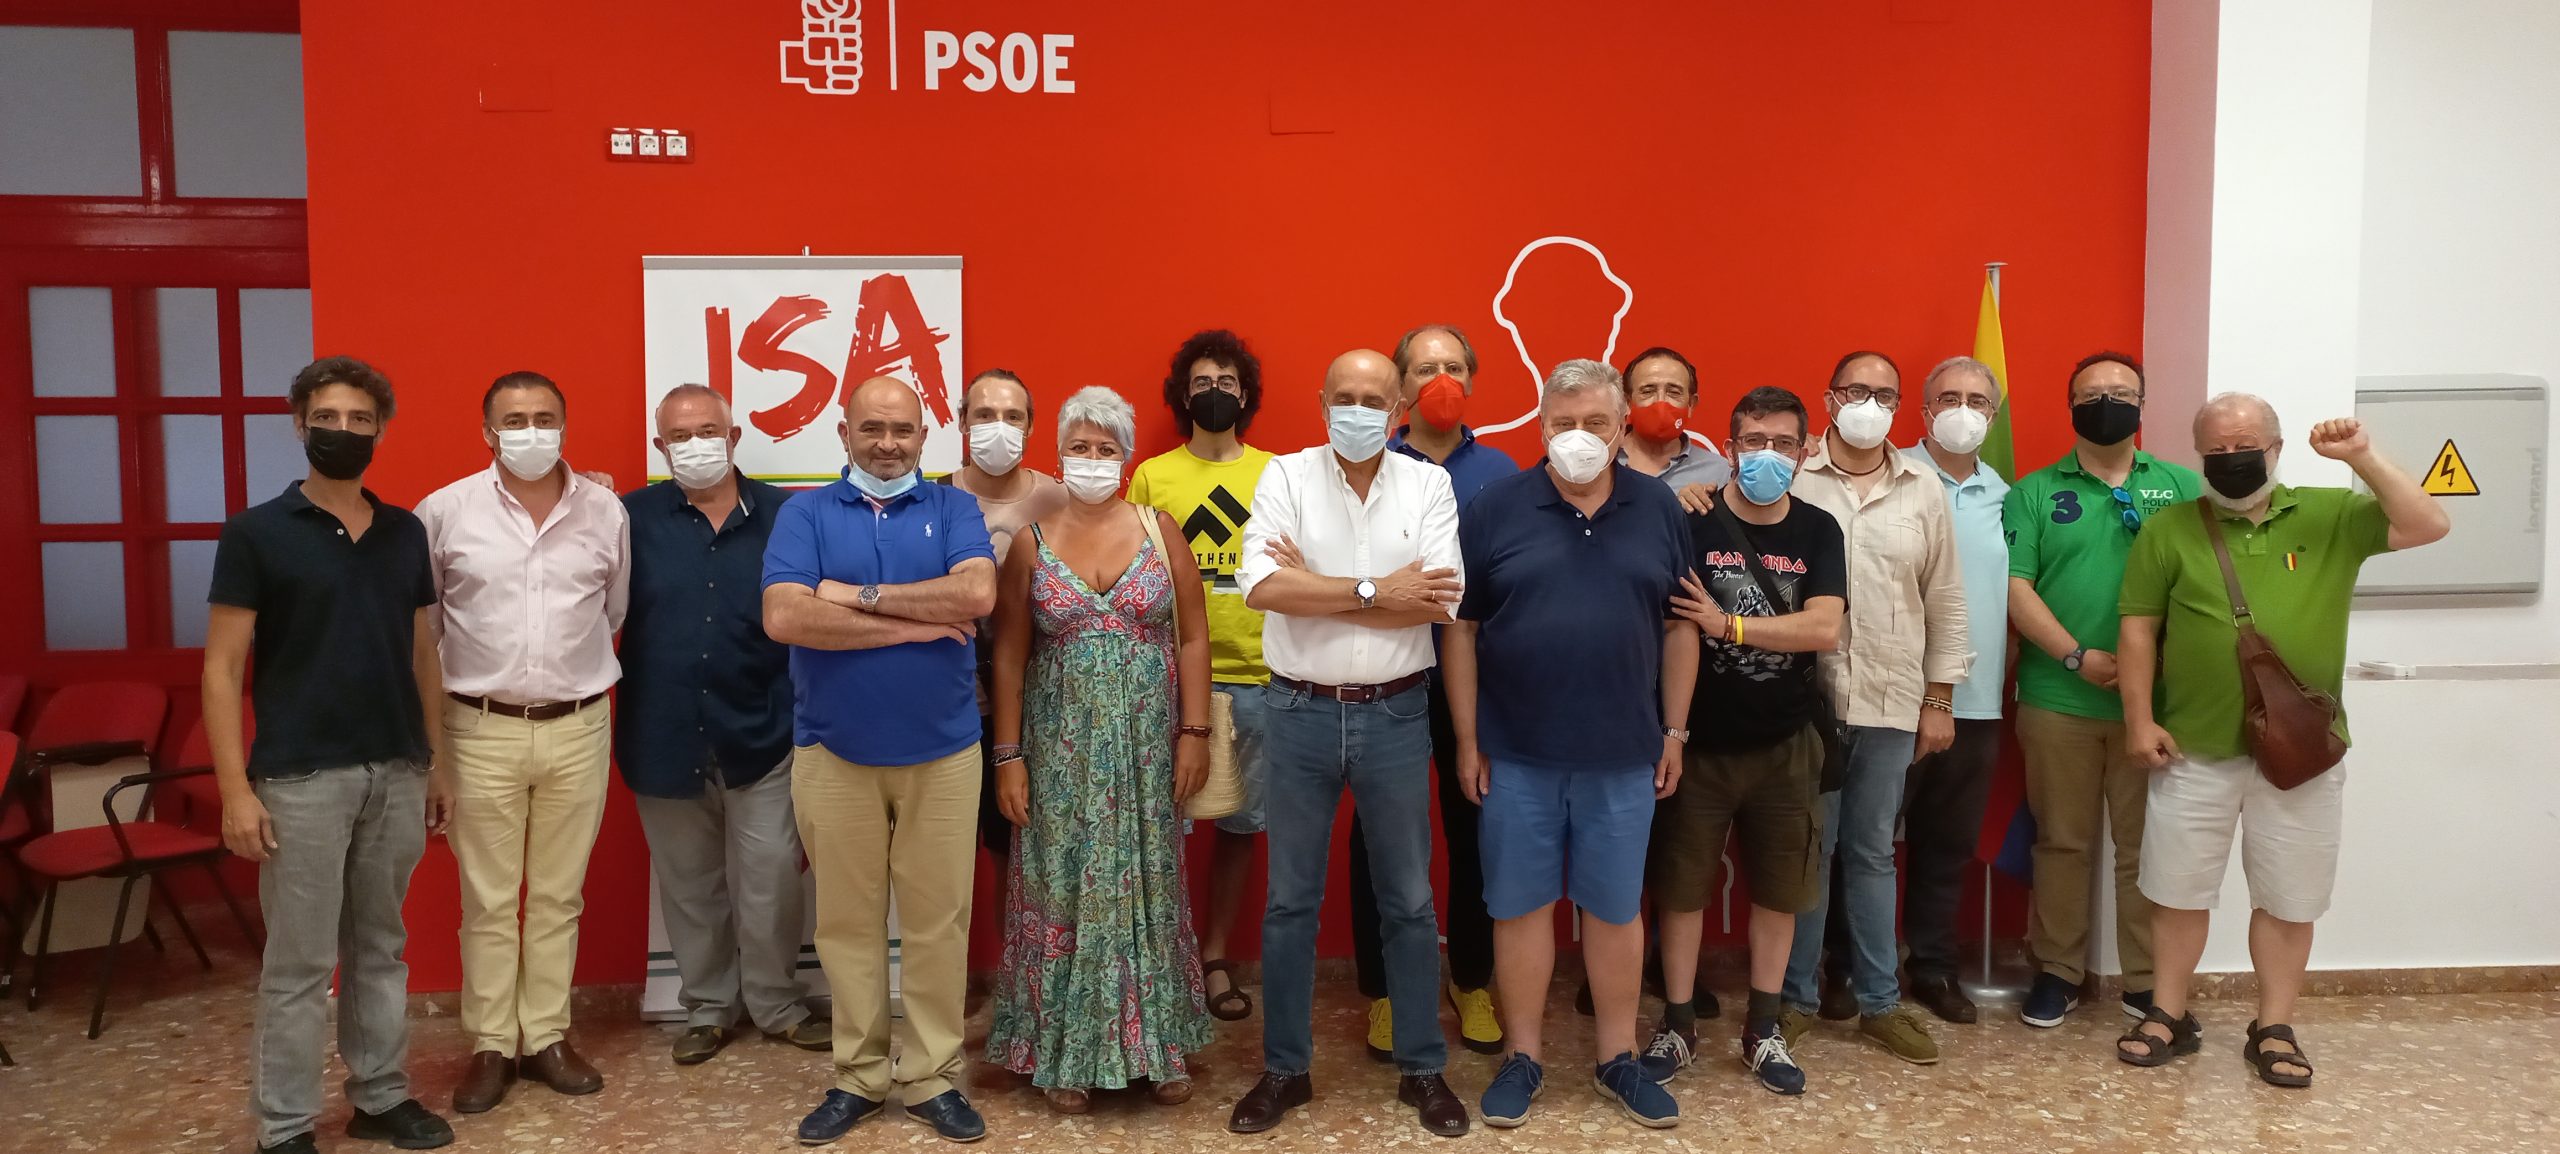 Andalucía Socialista-Bases en Marcha